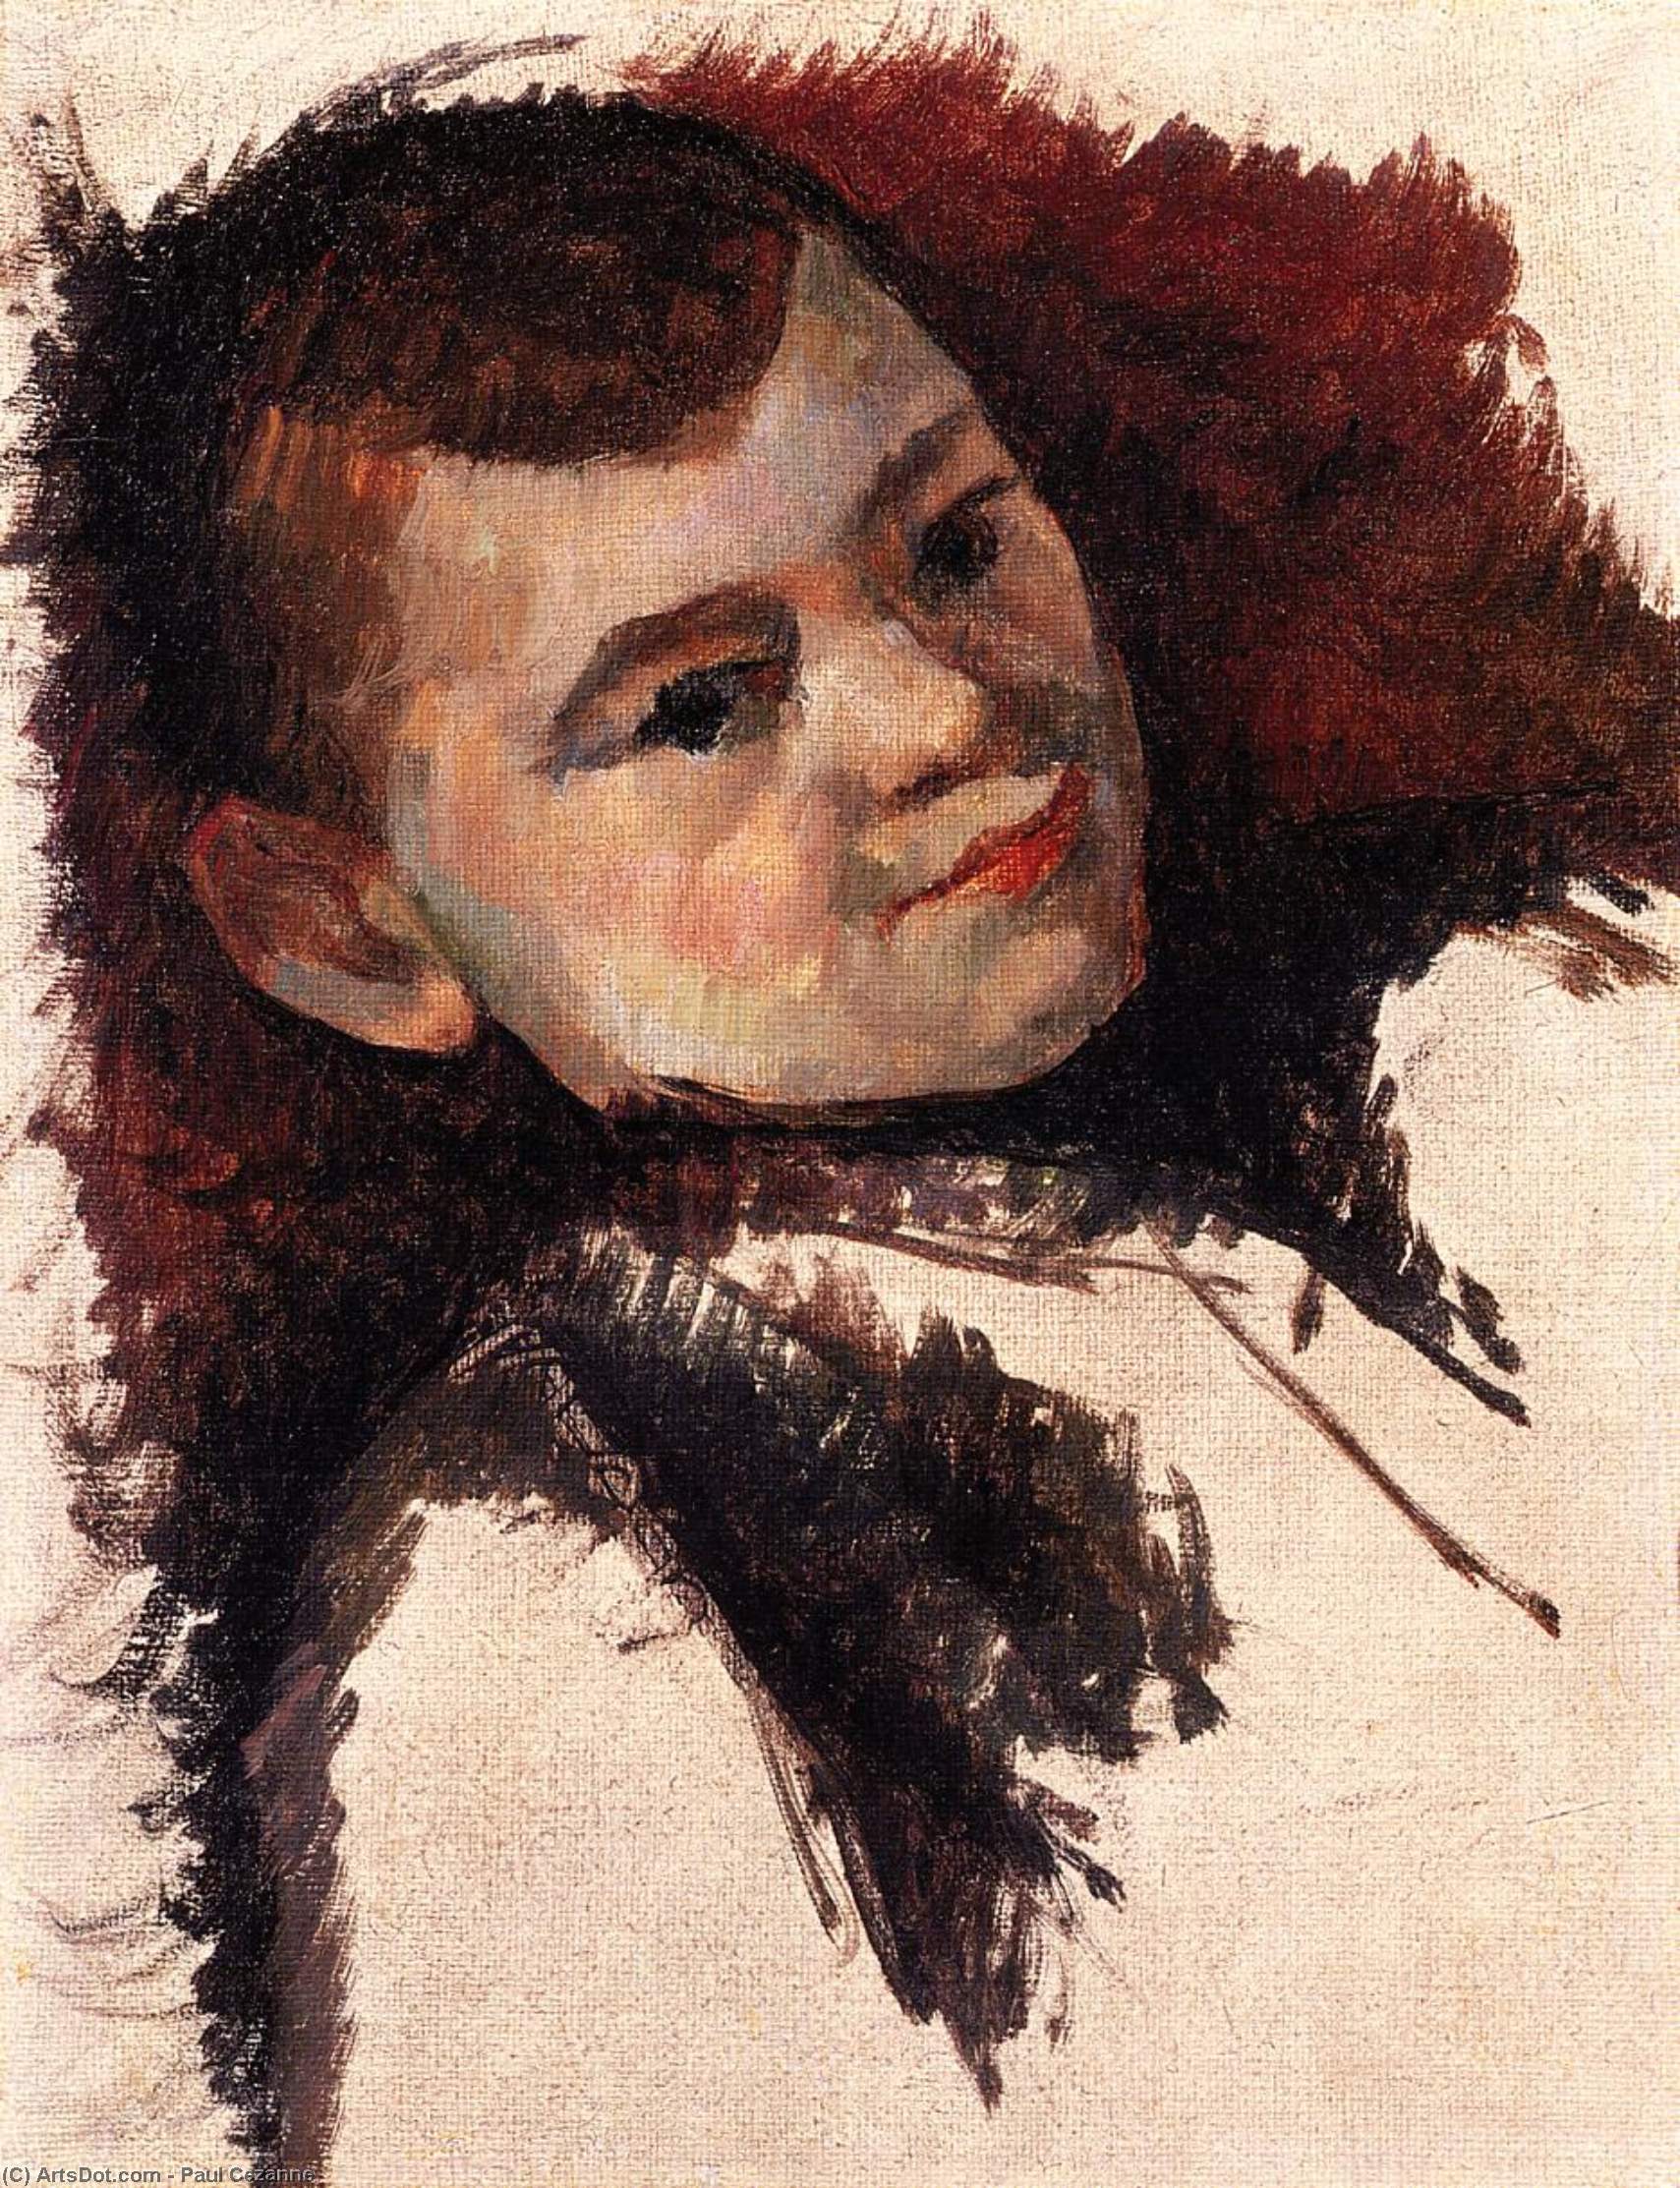 WikiOO.org - Encyclopedia of Fine Arts - Målning, konstverk Paul Cezanne - Portrait of the Artist's Son